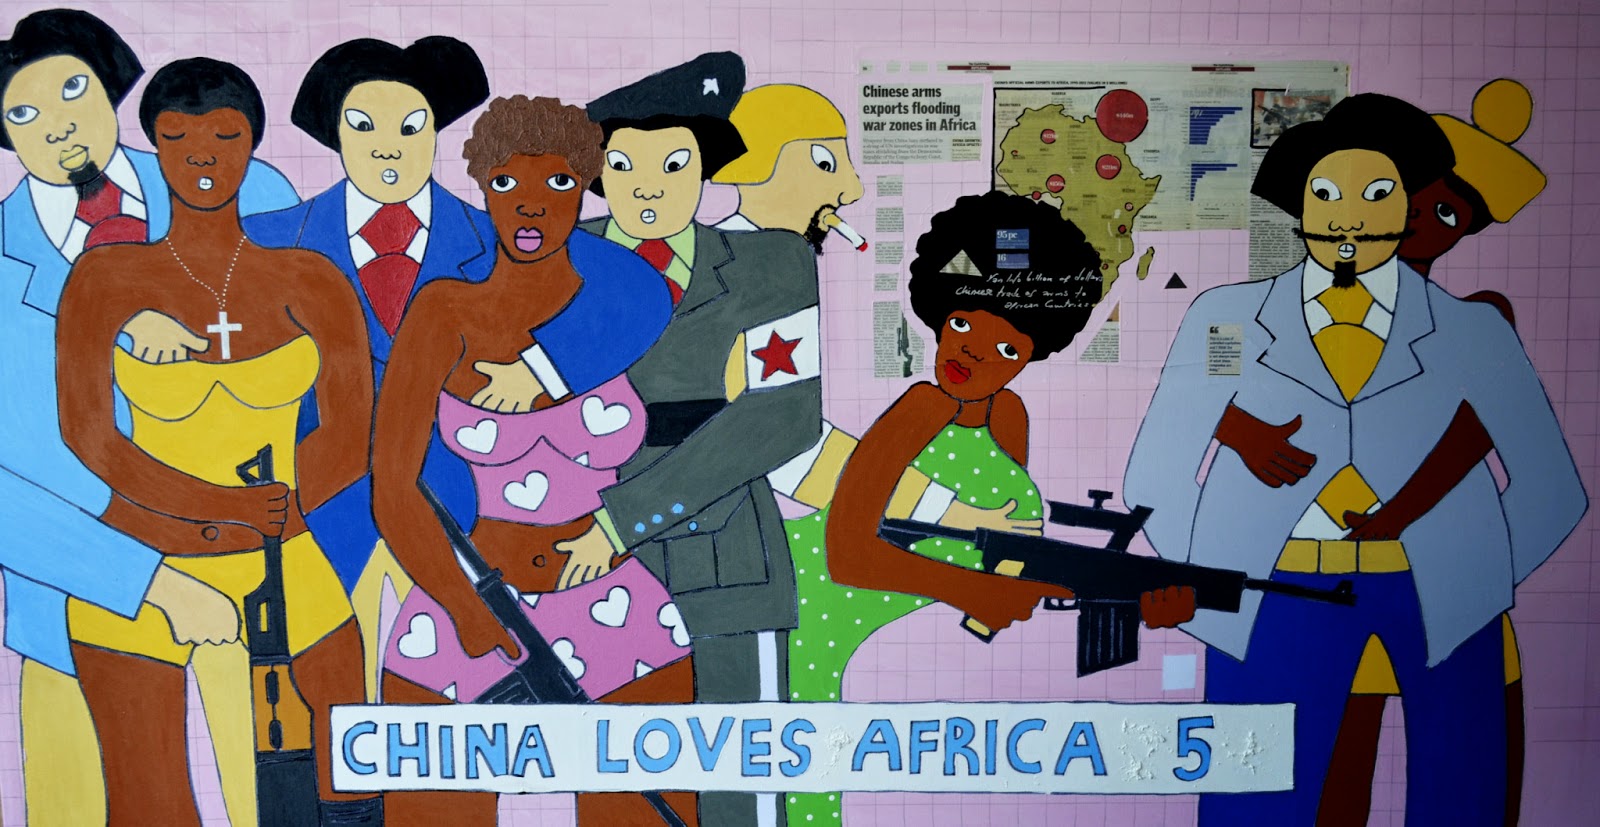 Chinees racisme zorgt voor ‘sinofobie’ in Afrika: ‘De houding van China is respectloos’